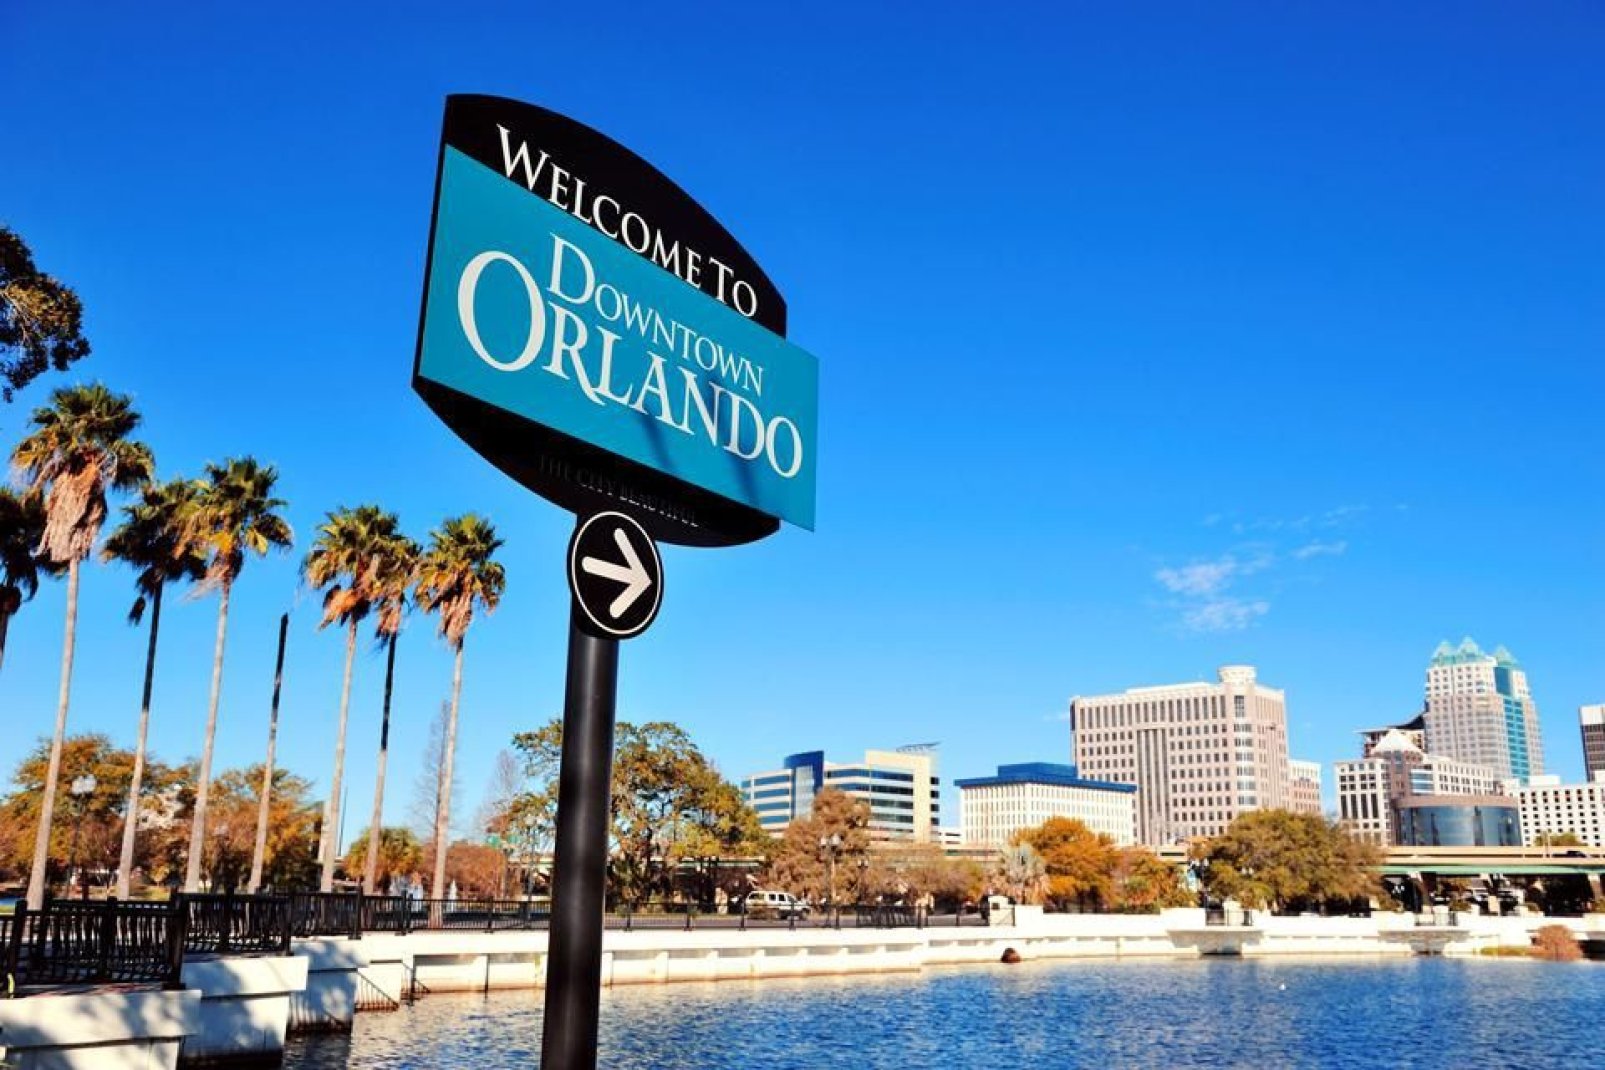 Das Stadtzentrum von Orlando gehört zu den größten innerhalb von Zentralflorida. Es handelt sich um ein bedeutendes Geschäftsviertel mit einer besonderen kulturellen Dimension.